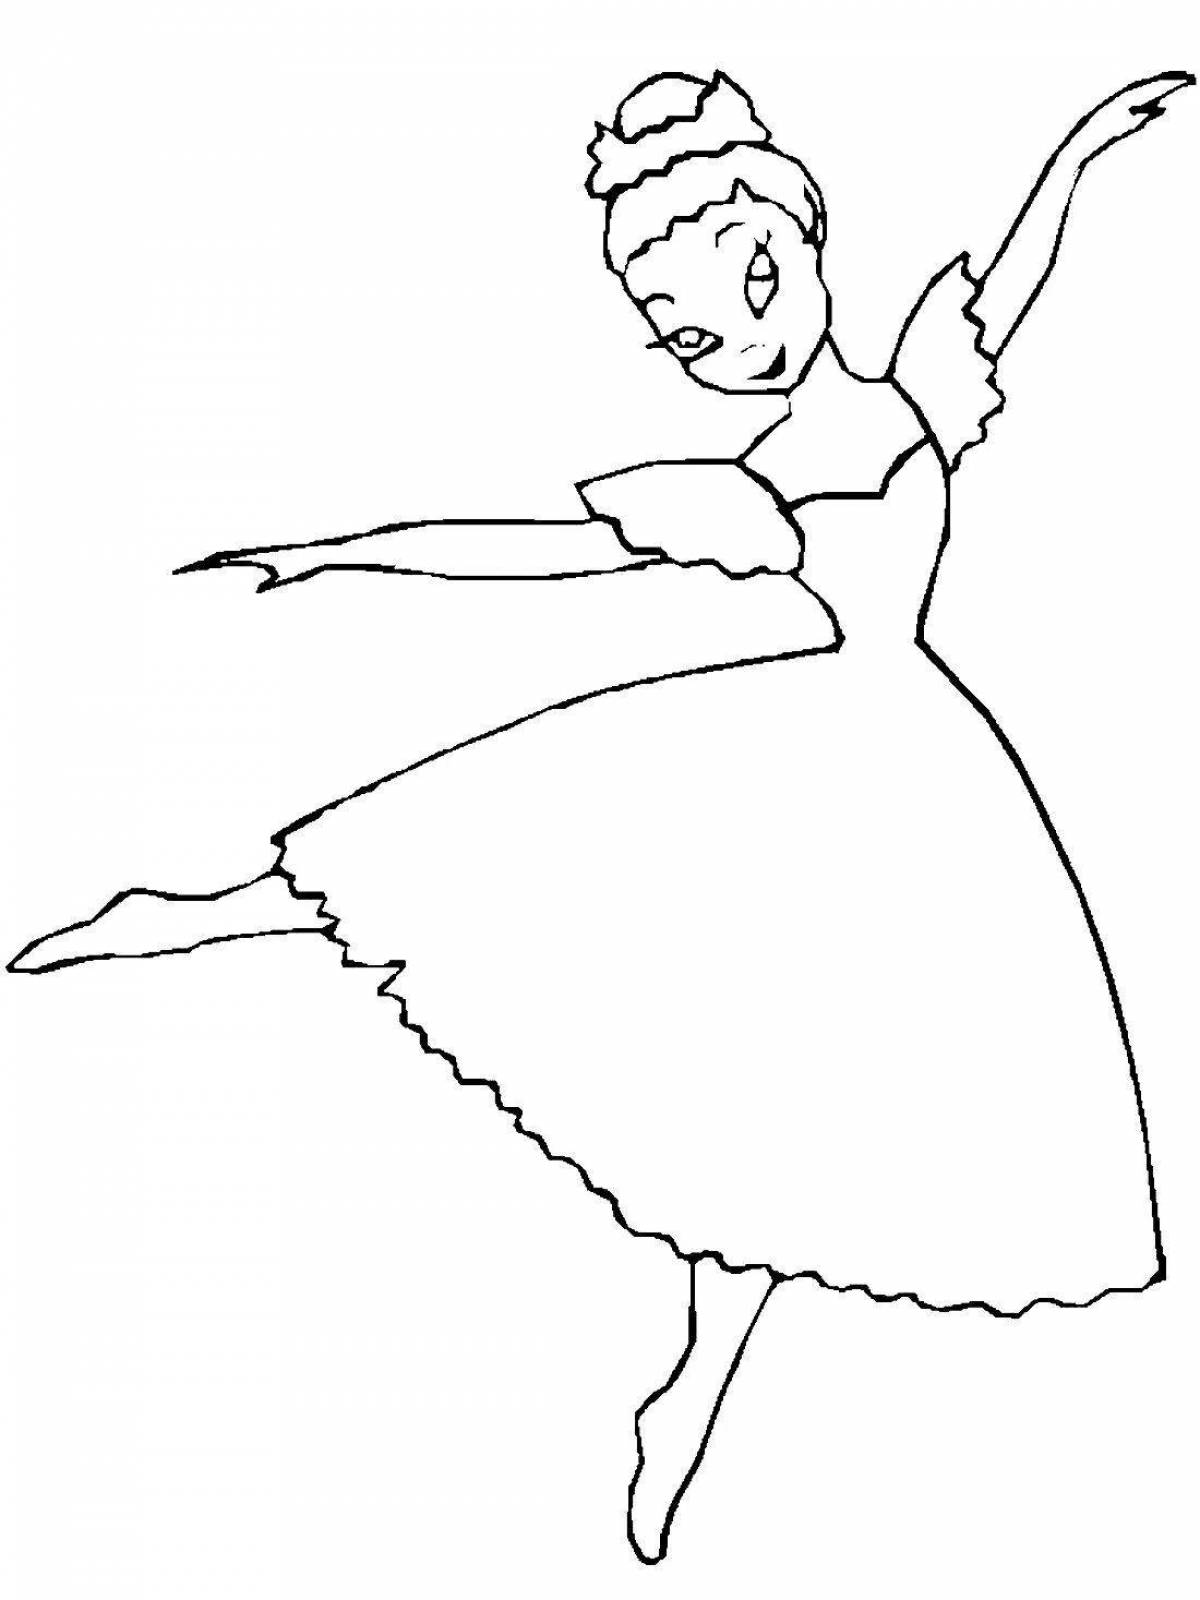 Художественный рисунок балерины